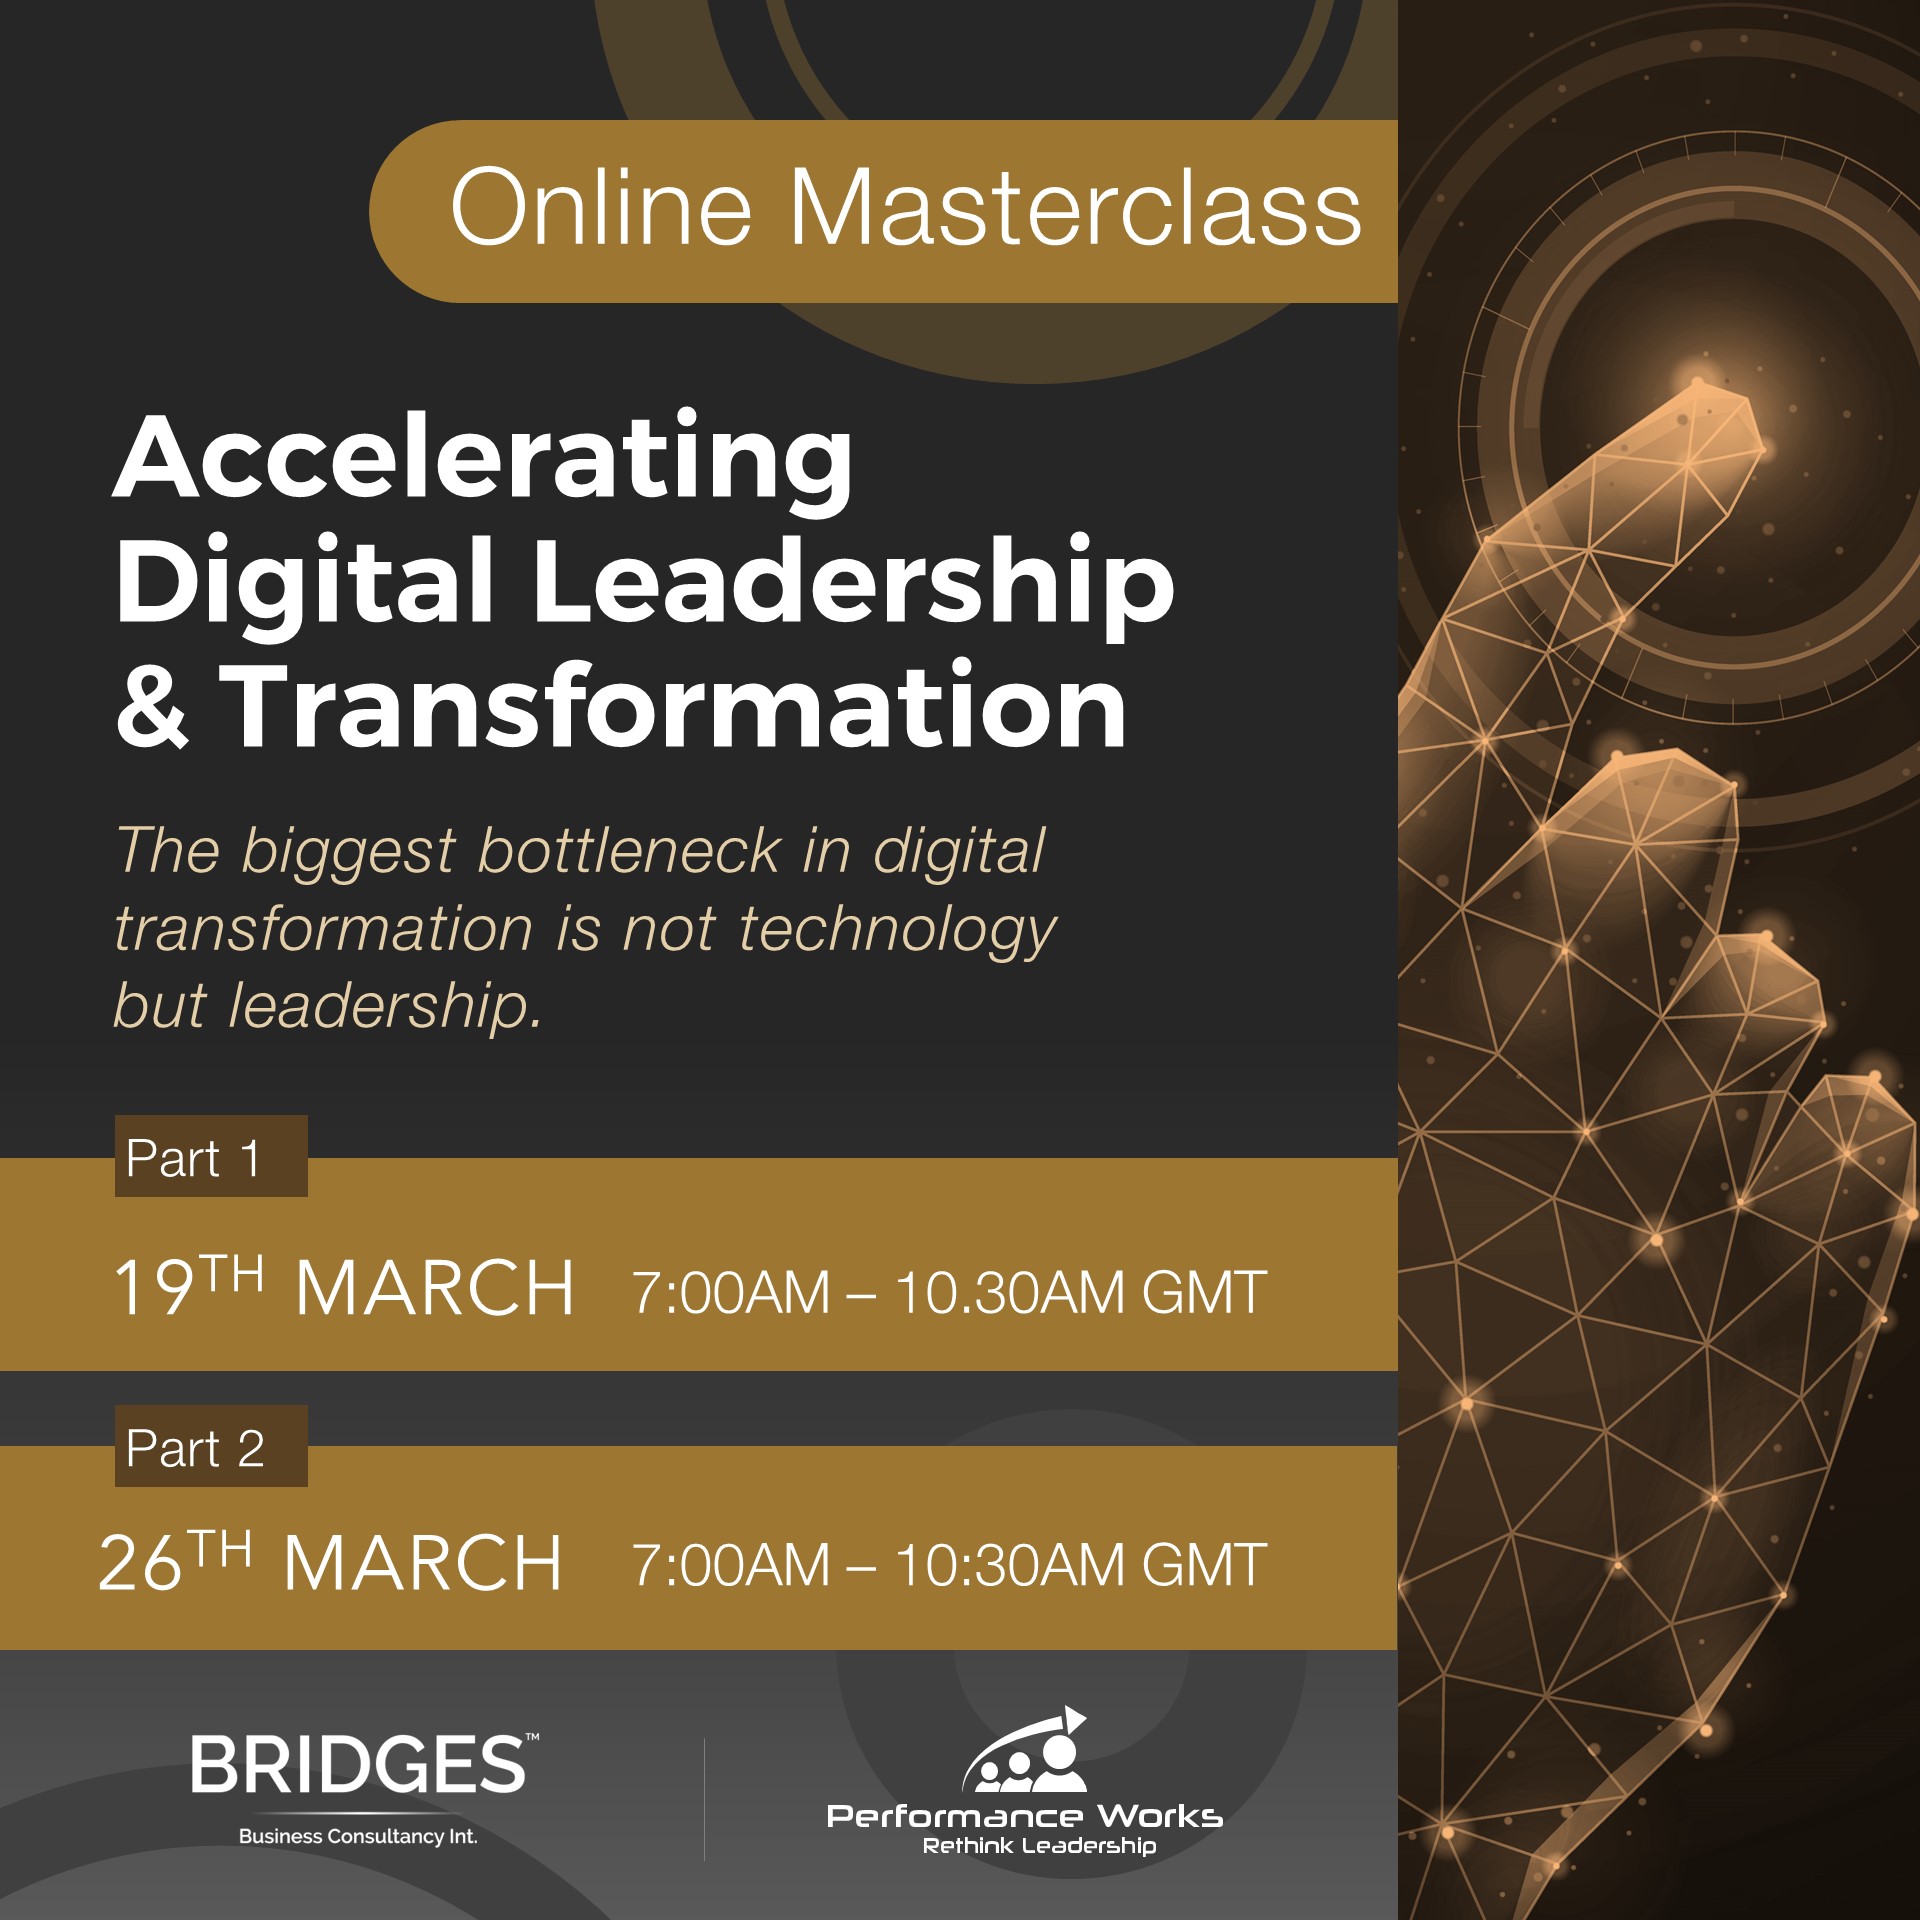 Online Masterclass Digital Leadership Transformation